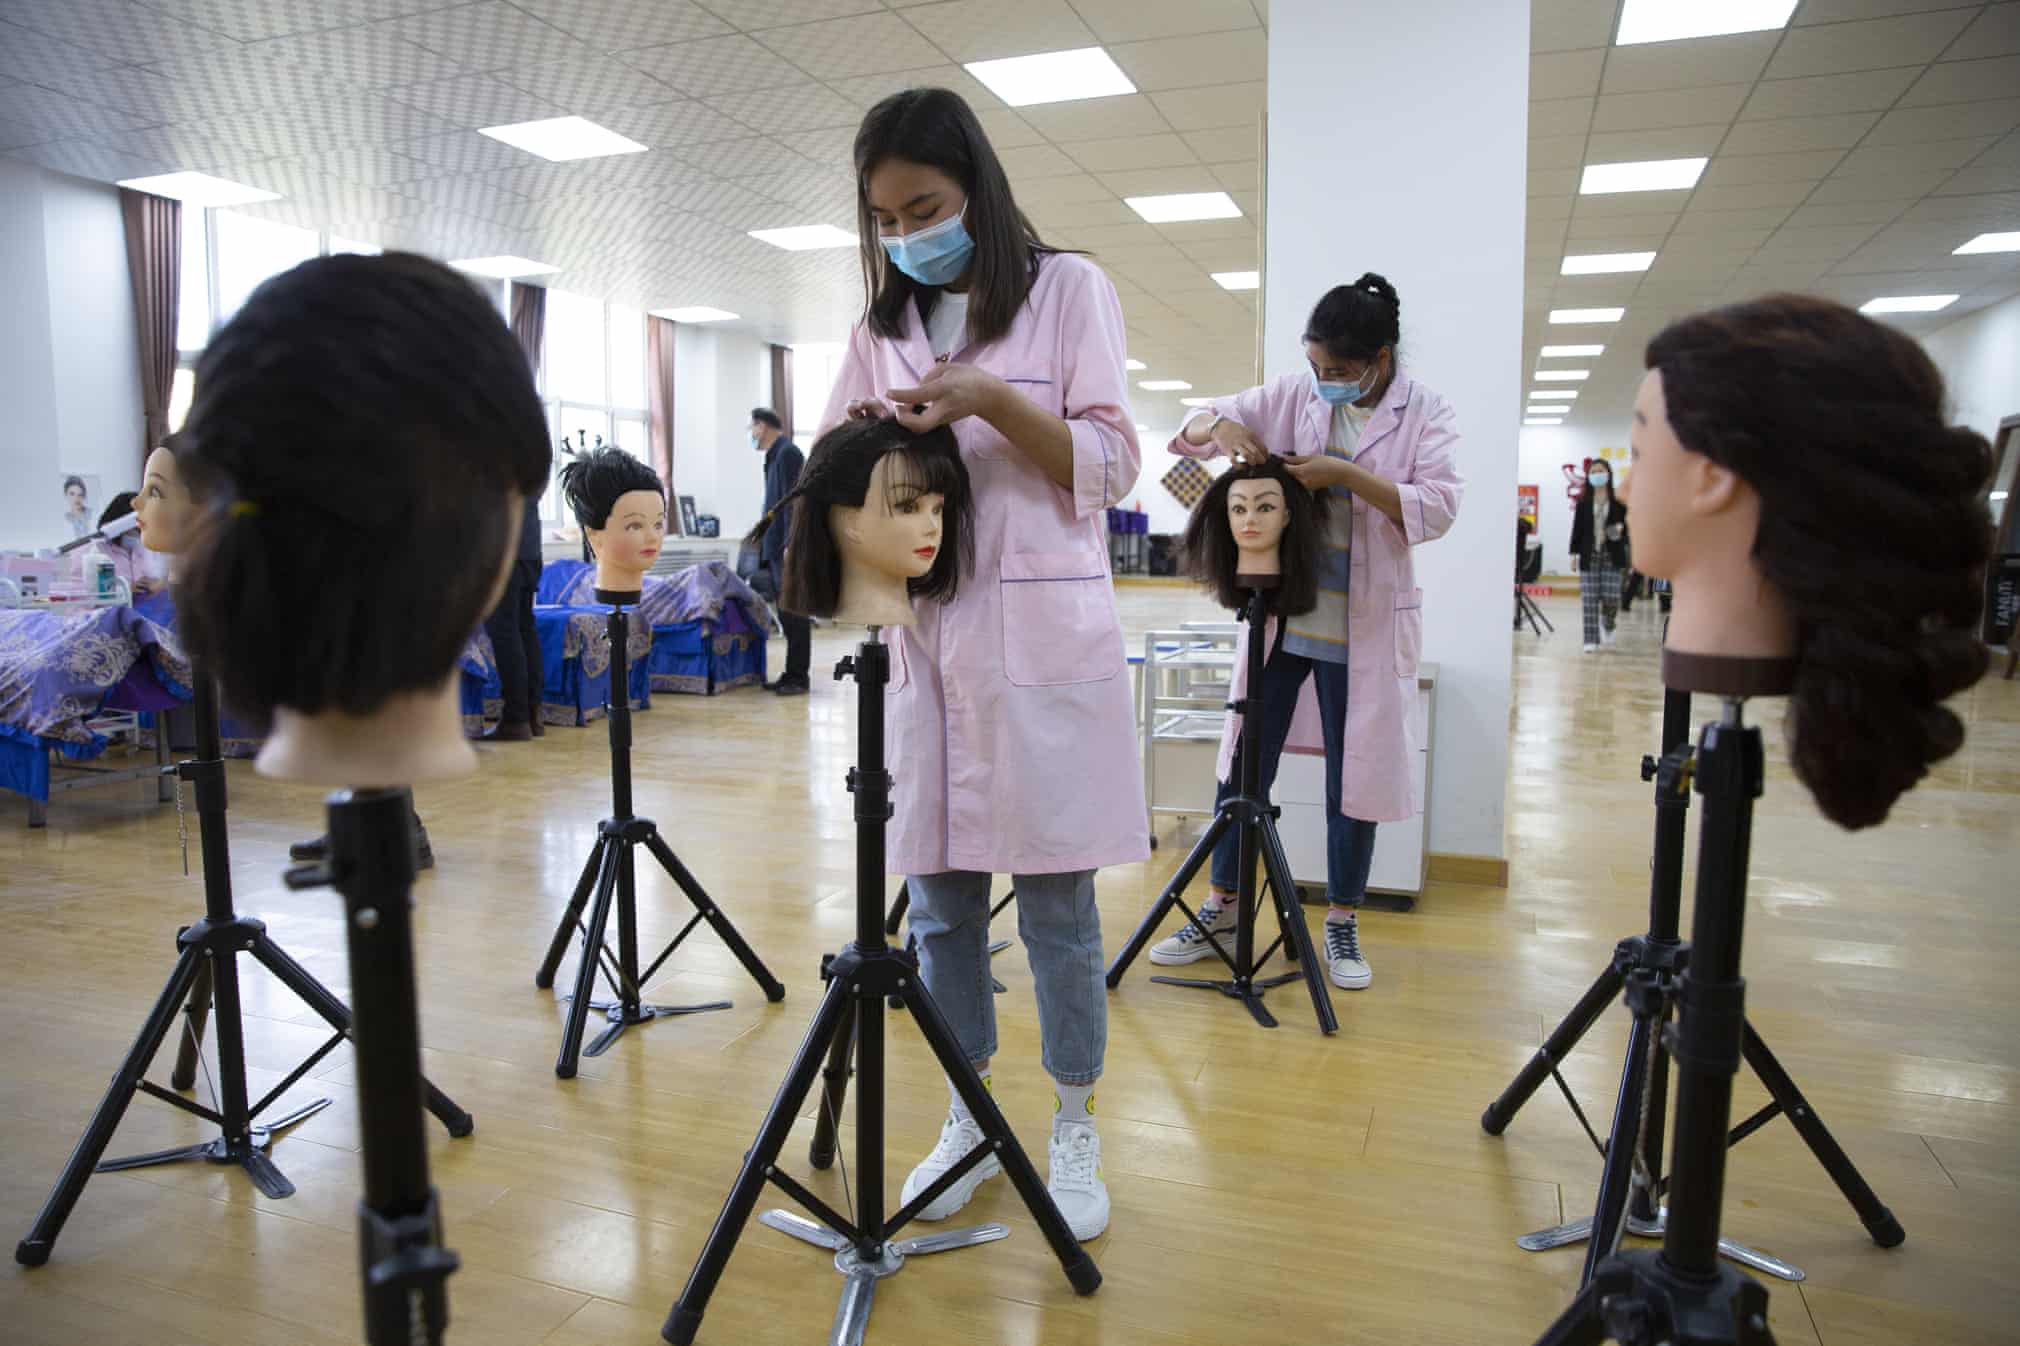 کار کردن دانش آموزان چینی در مدرسه روی گلاه کیس مانکن ها + عکس